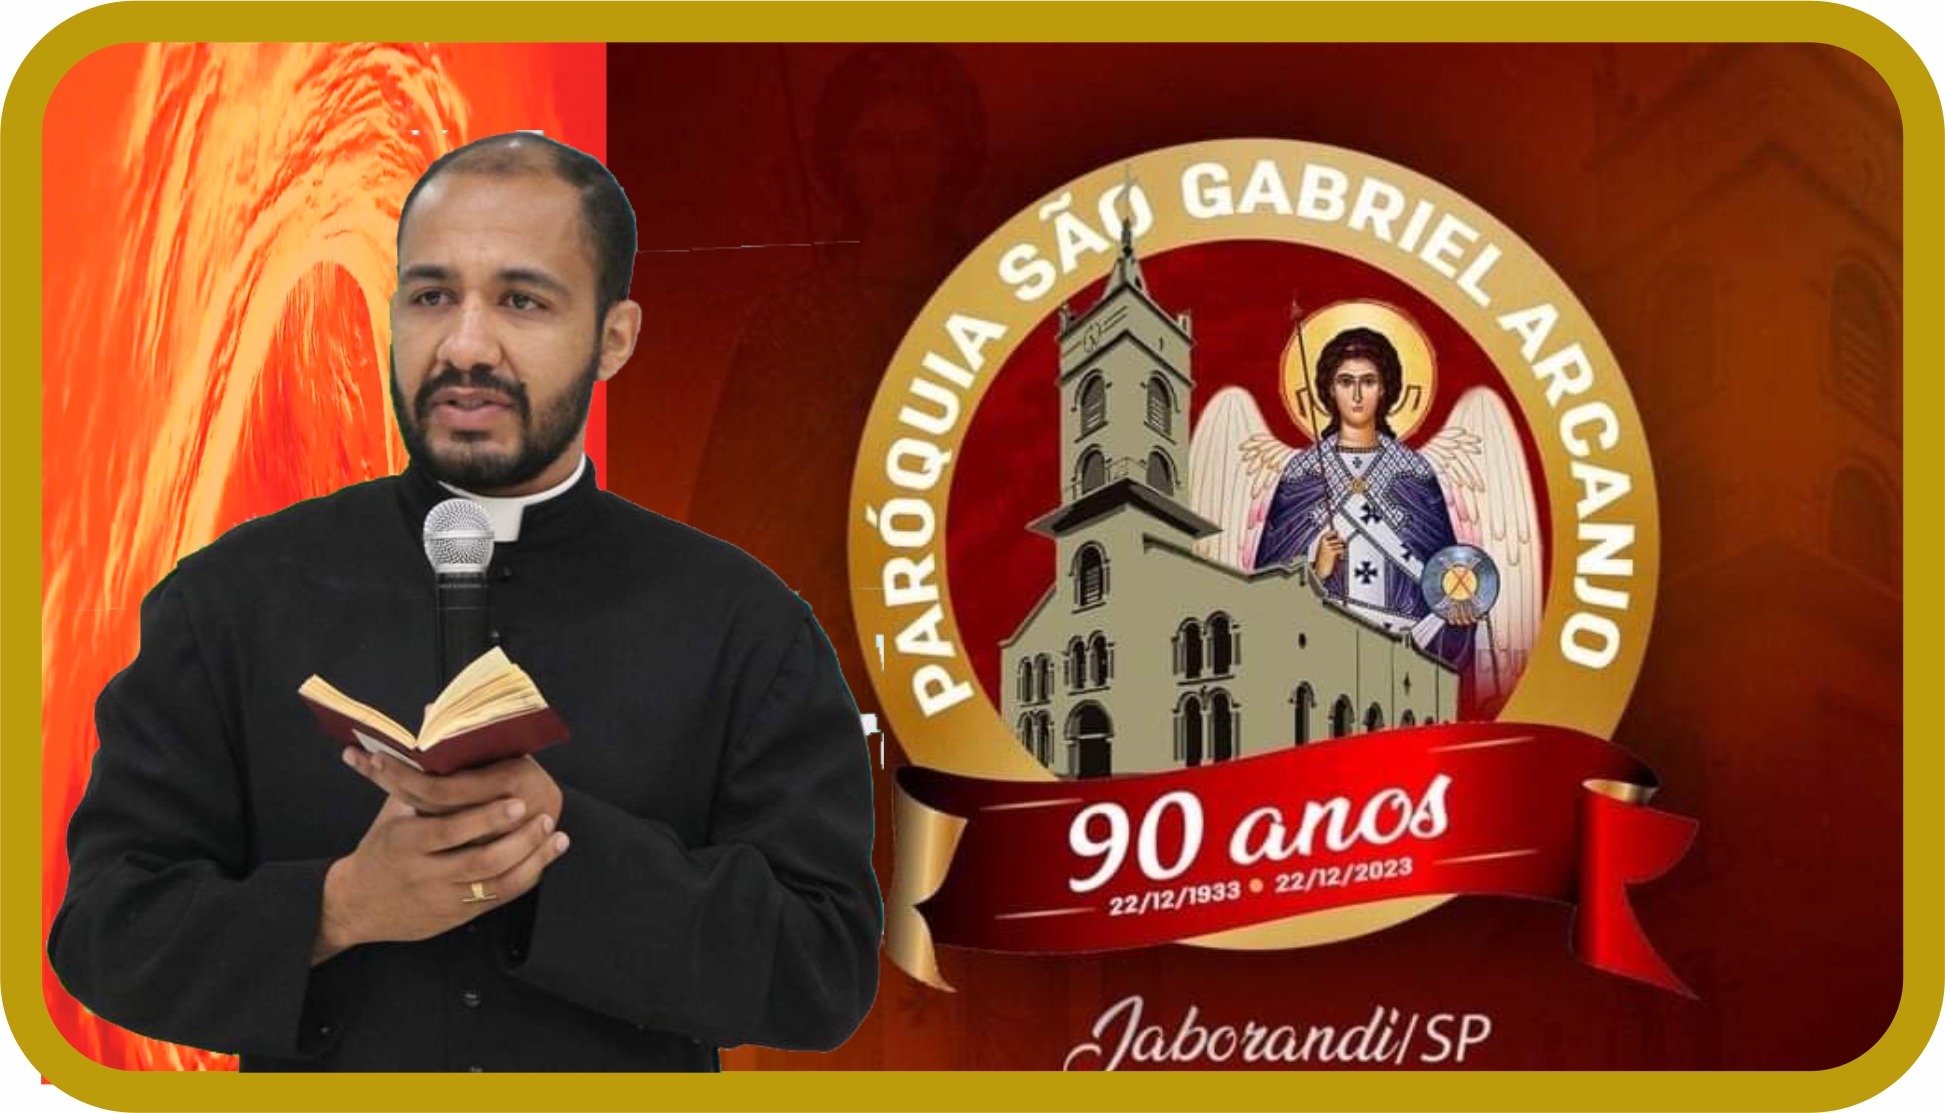 Paróquia São Gabriel Arcanjo de Jaborandi celebra Jubileu de 90 anos